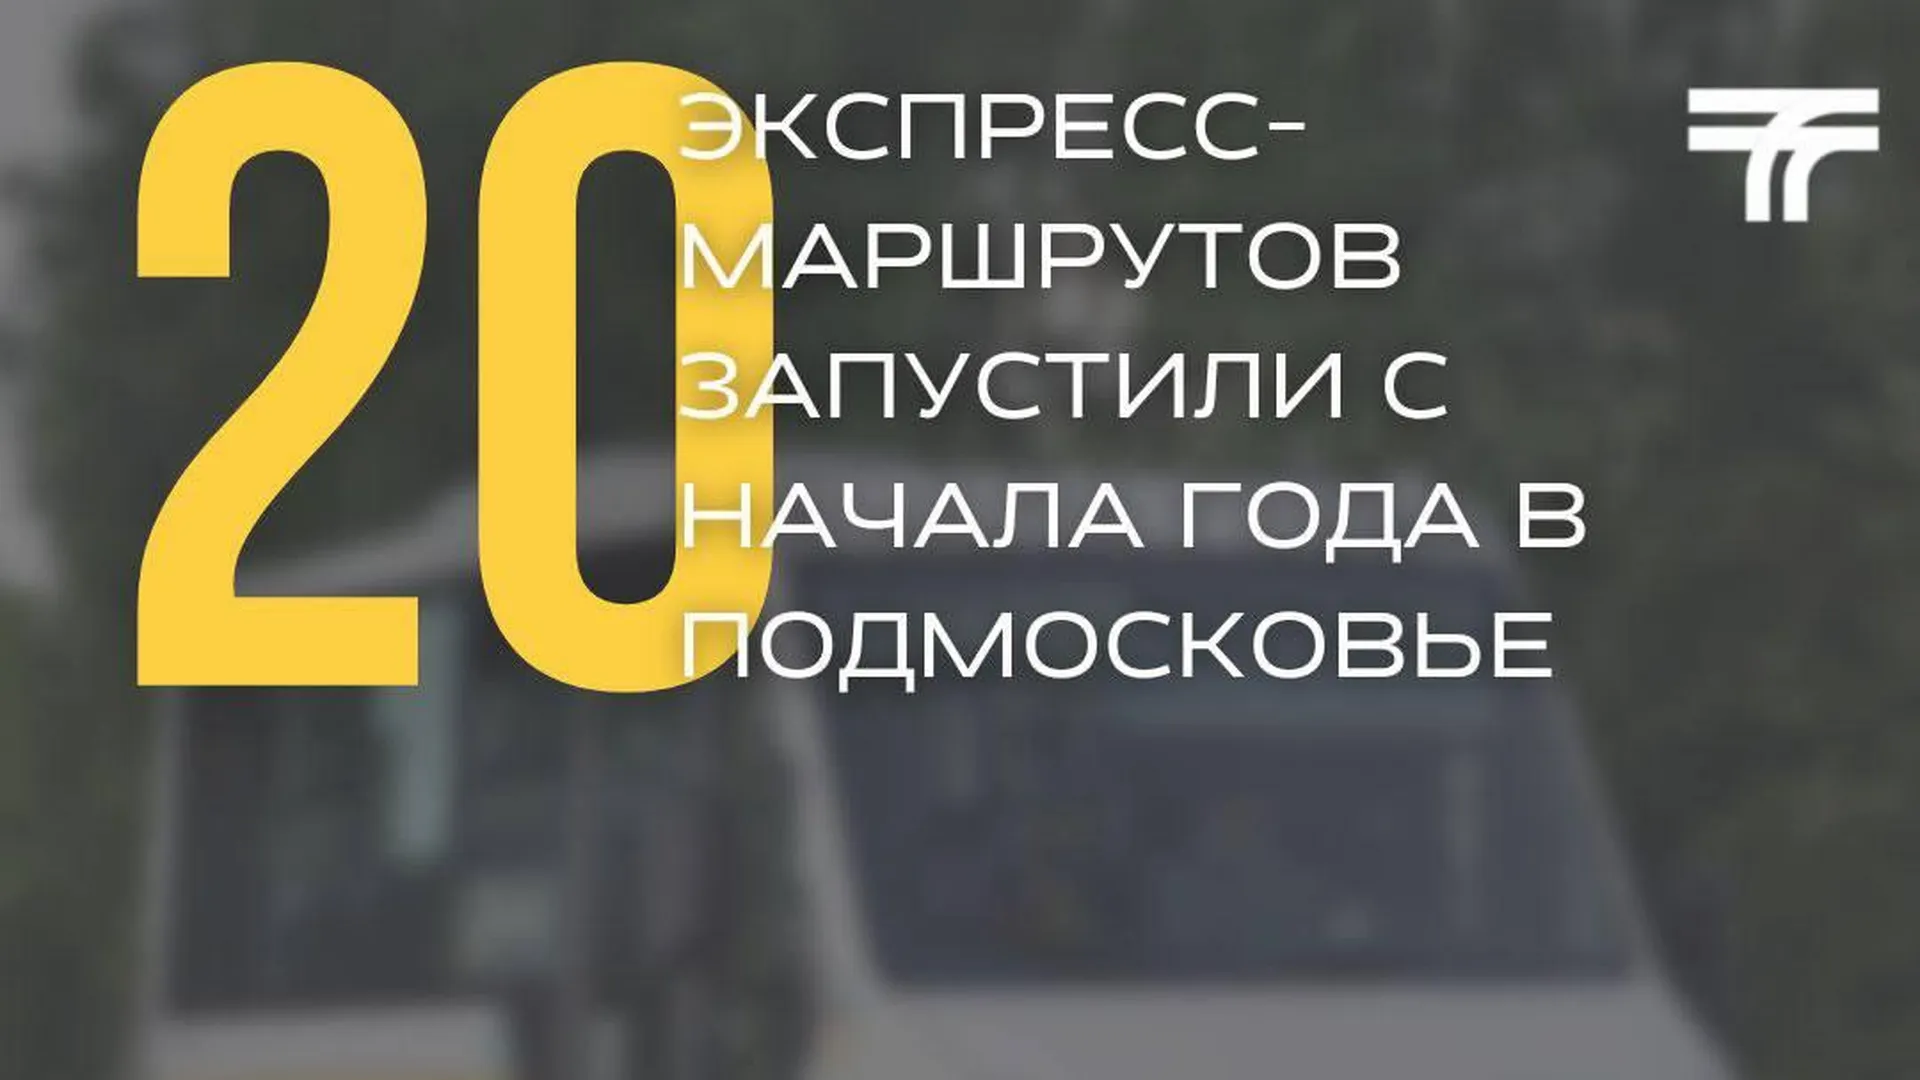 Министерство транспорта и дорожной инфраструктуры Московской области